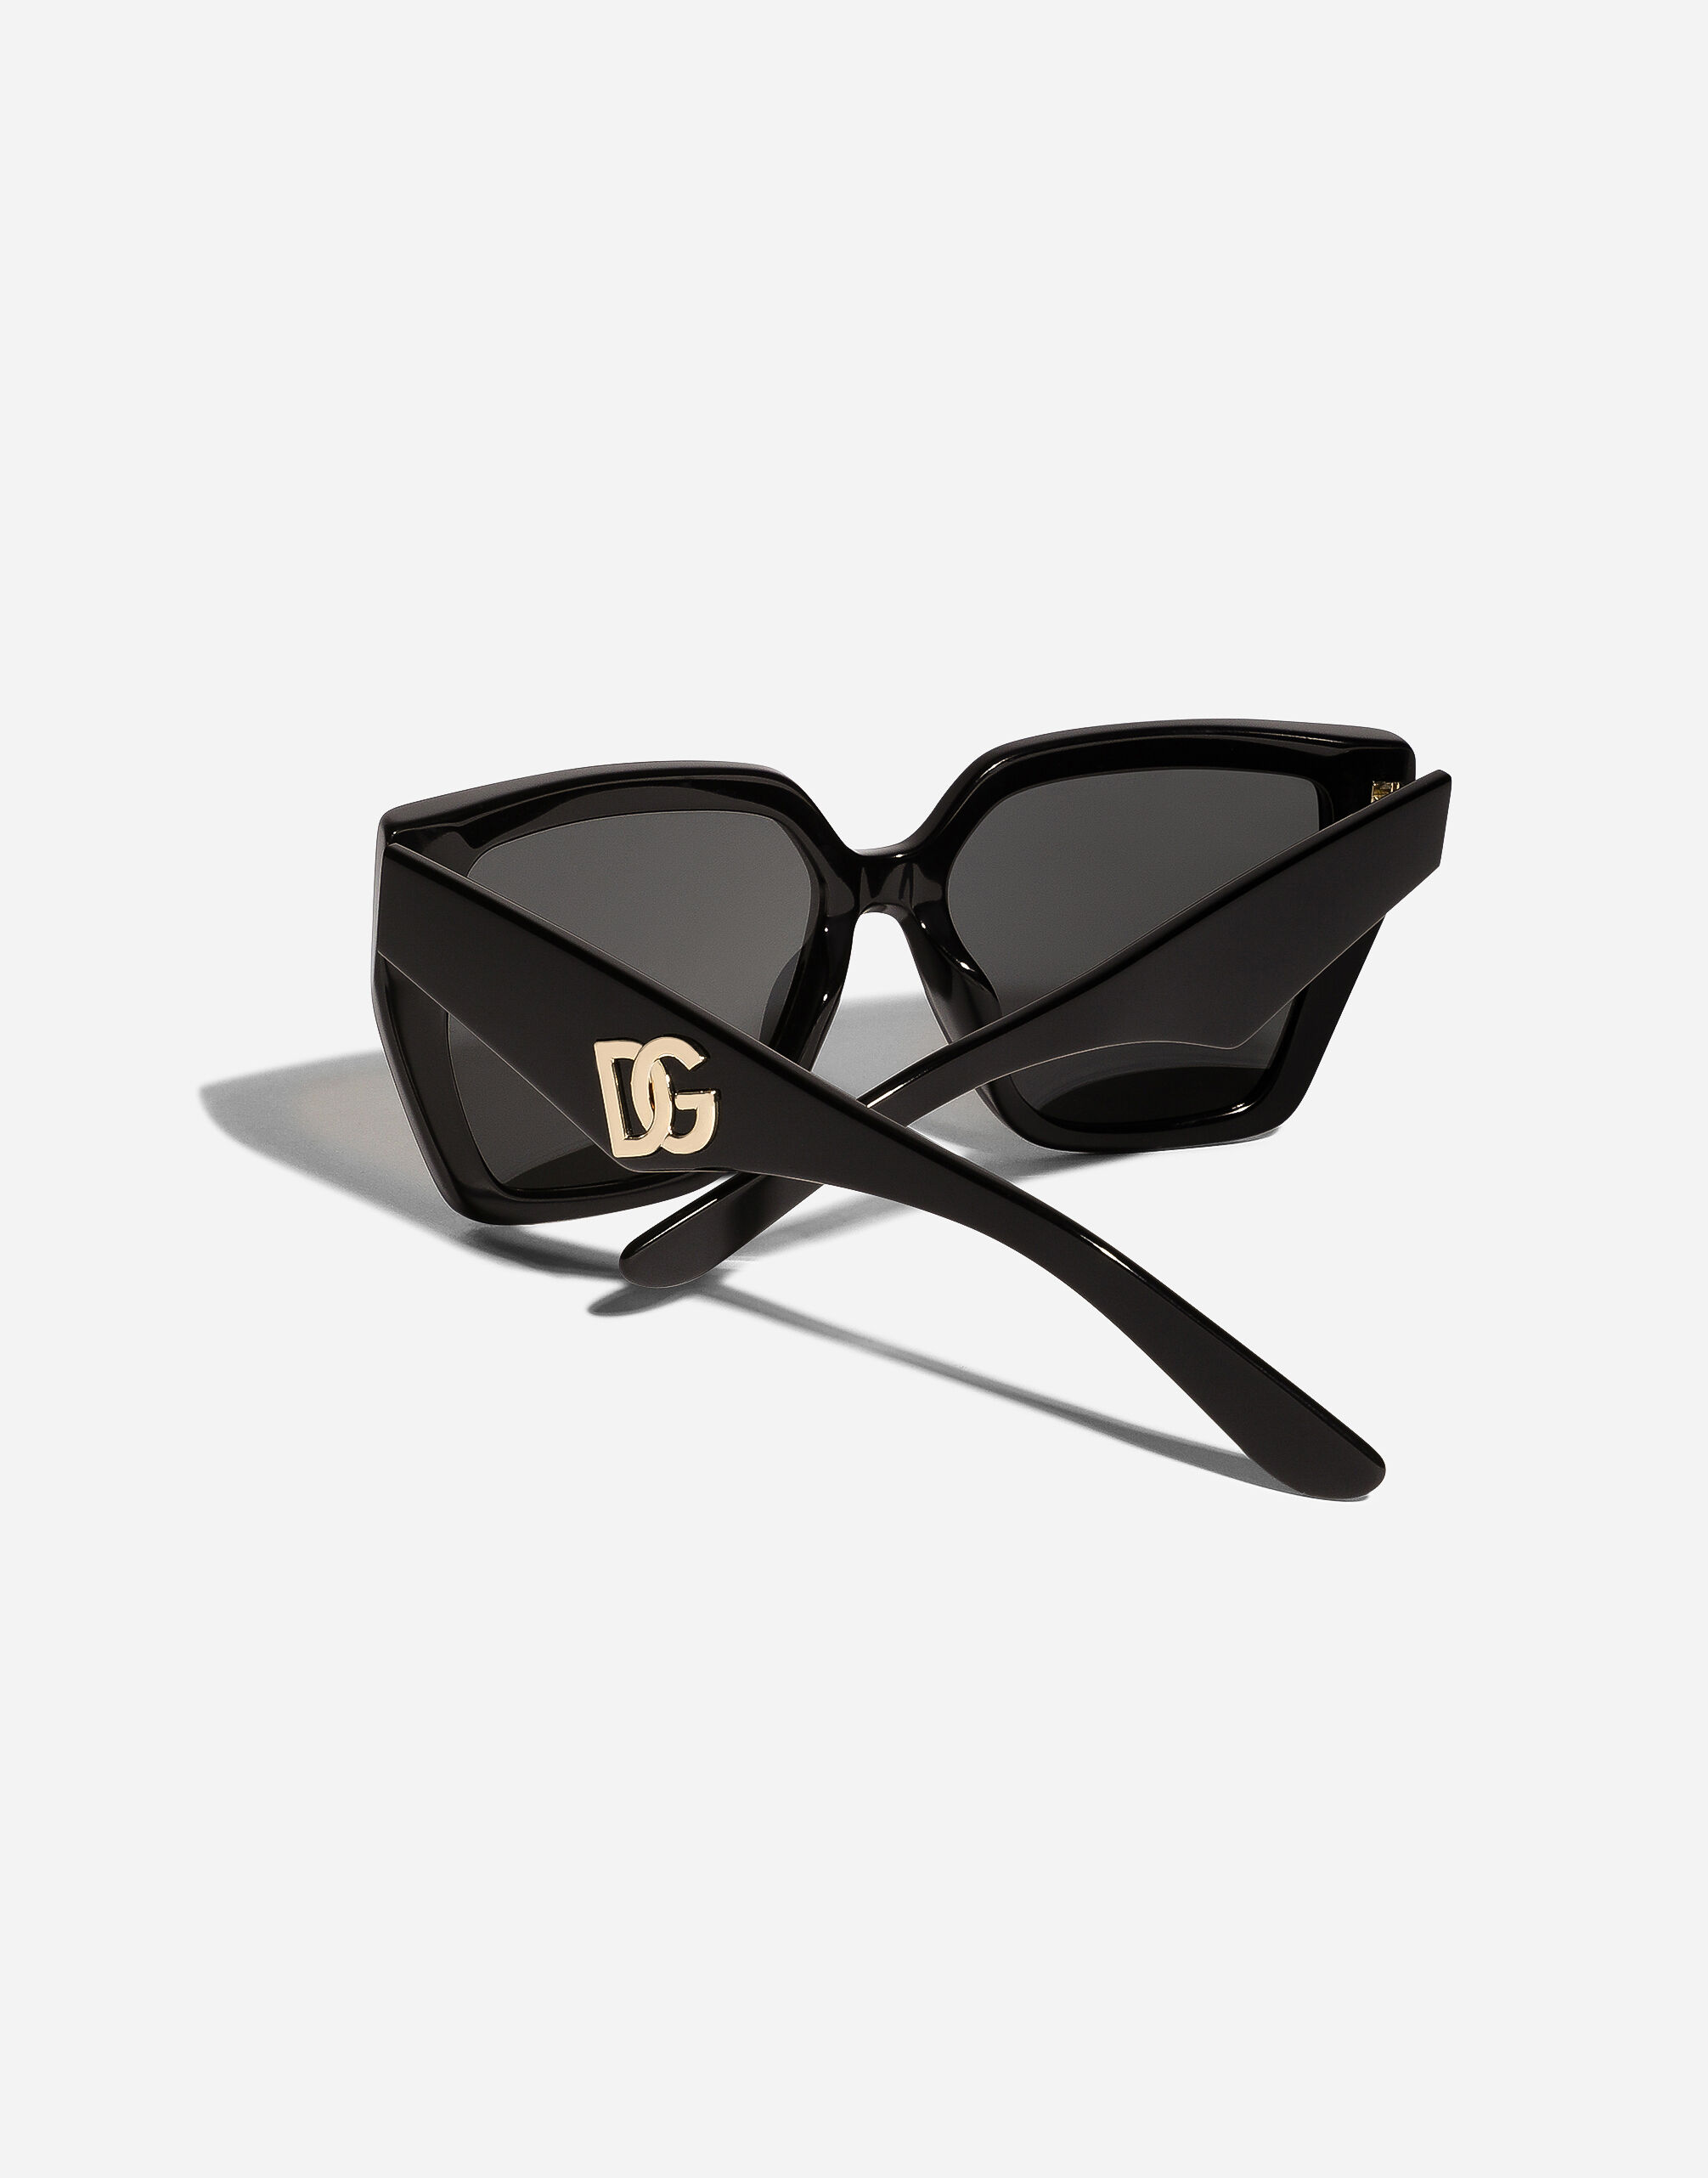 DG Crossed Sunglasses